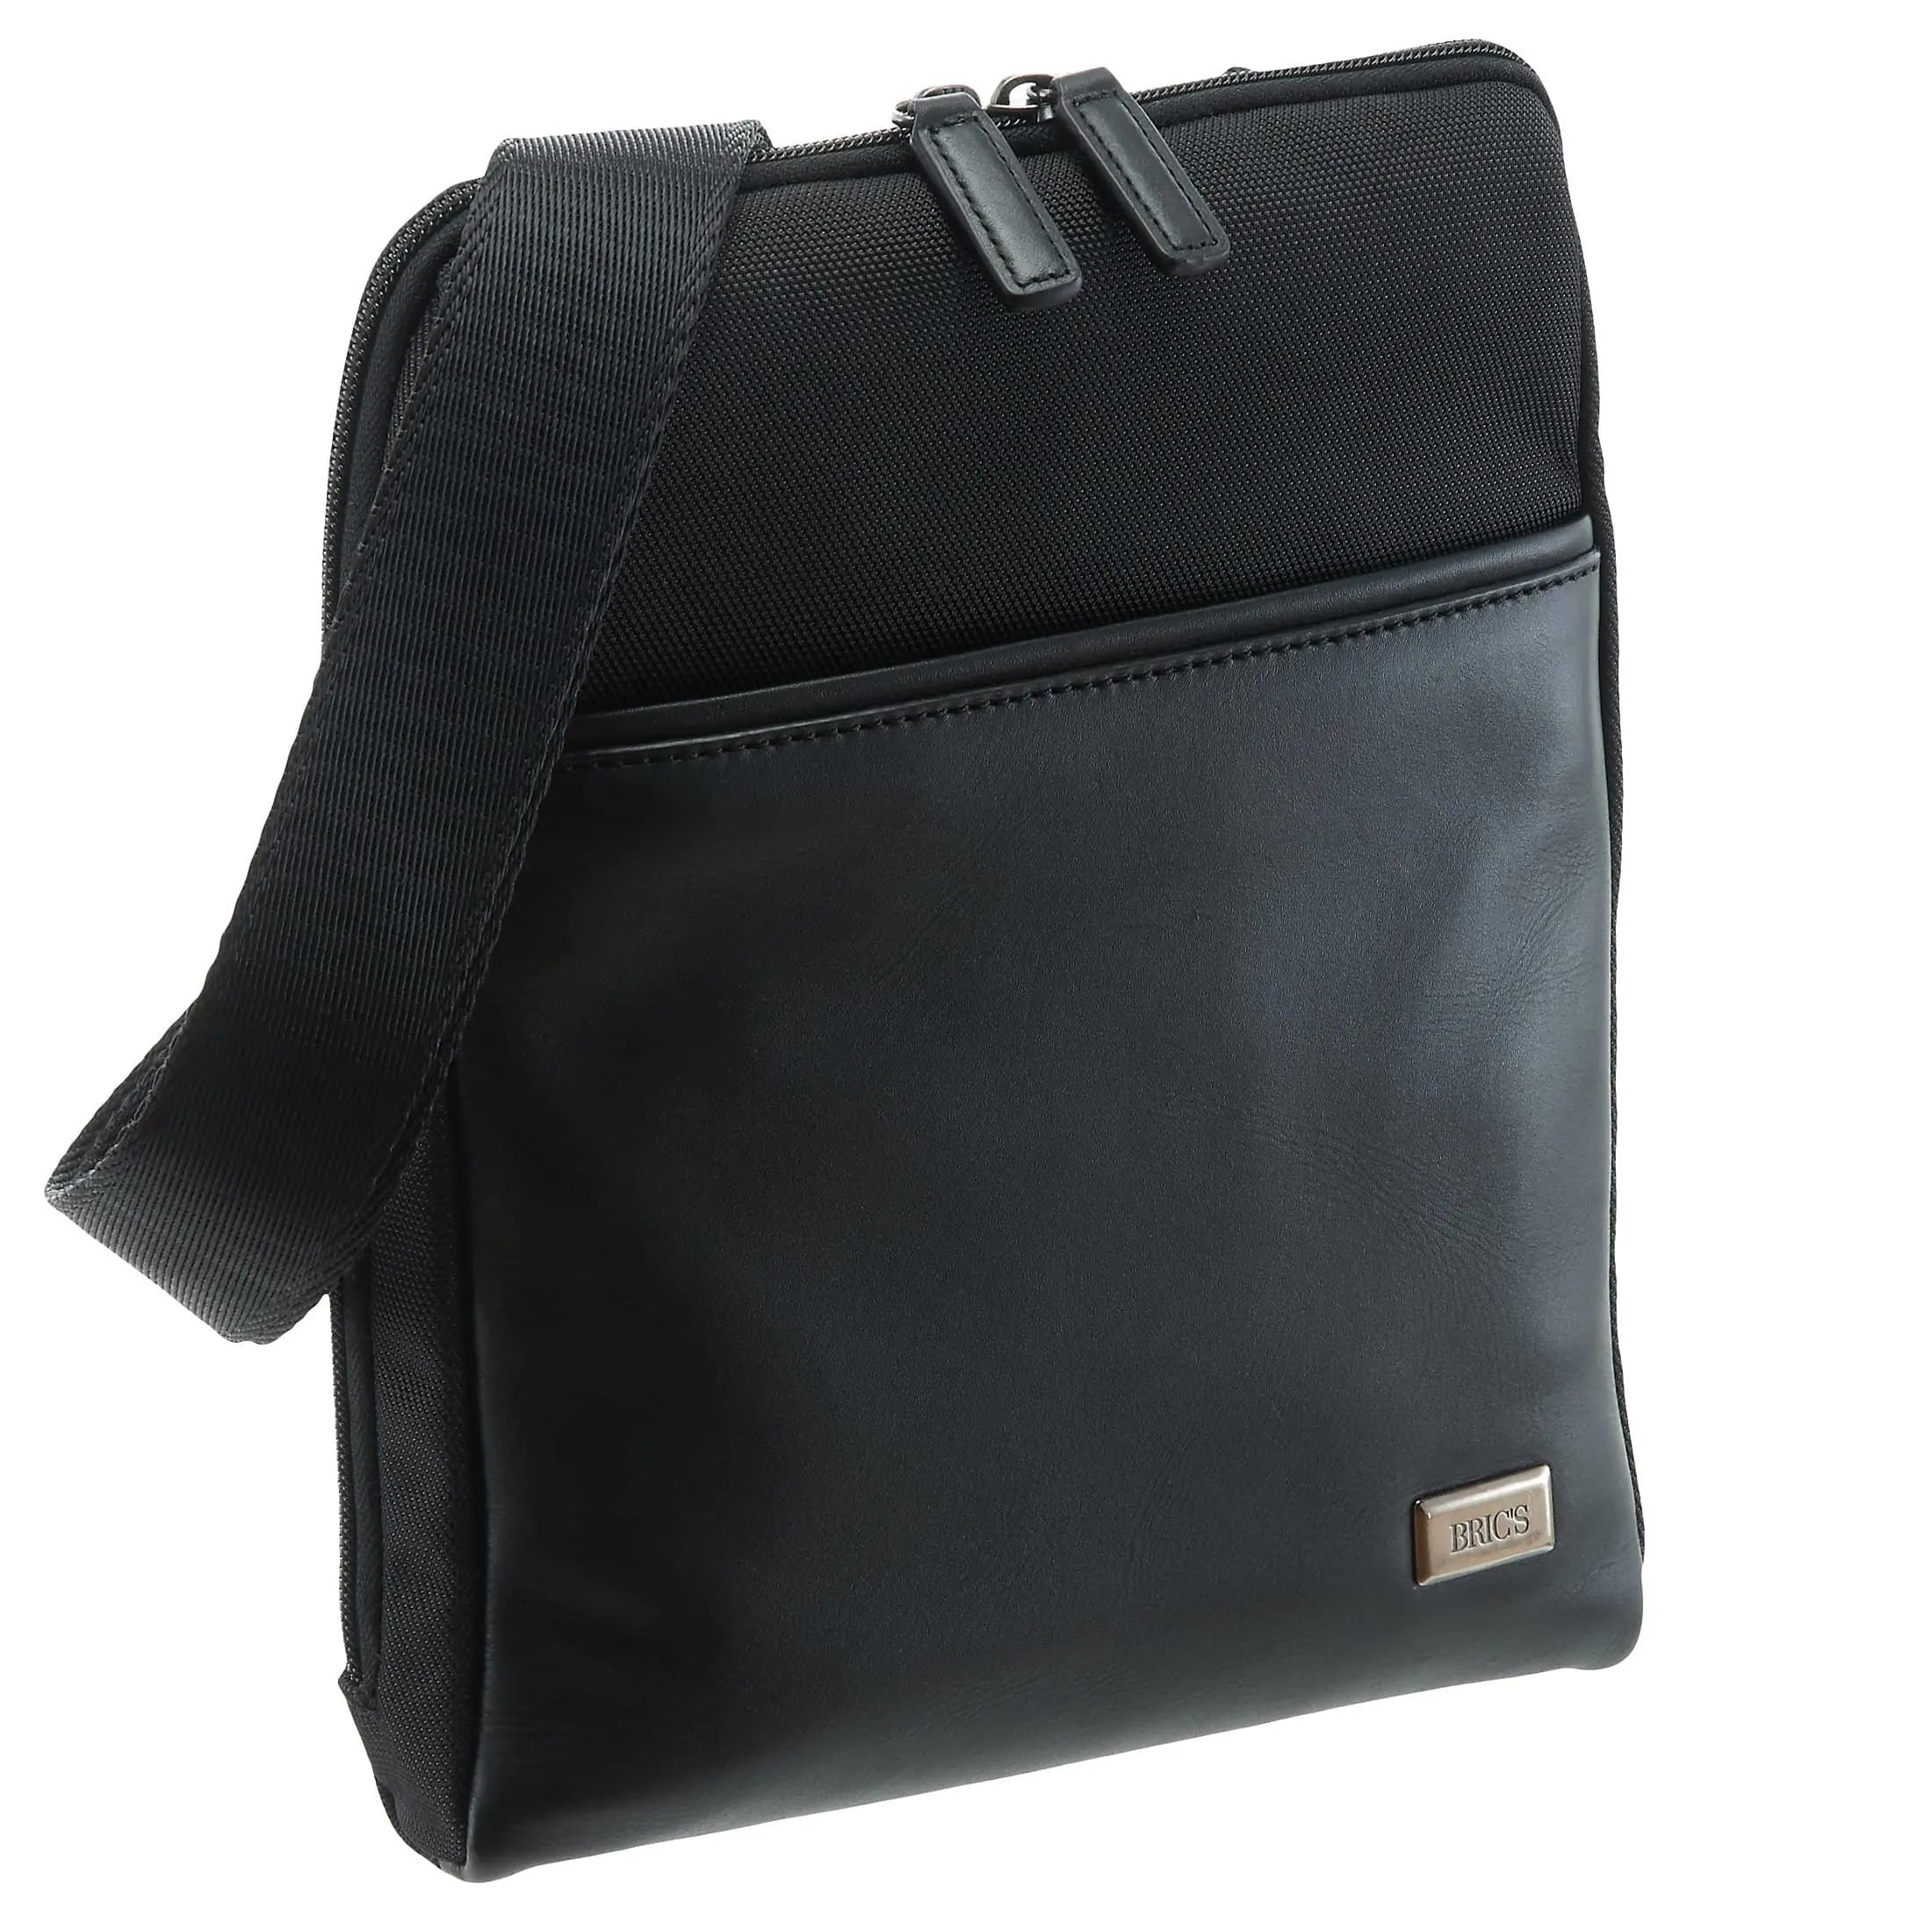 Brics Monza shoulder bag 27 cm - black